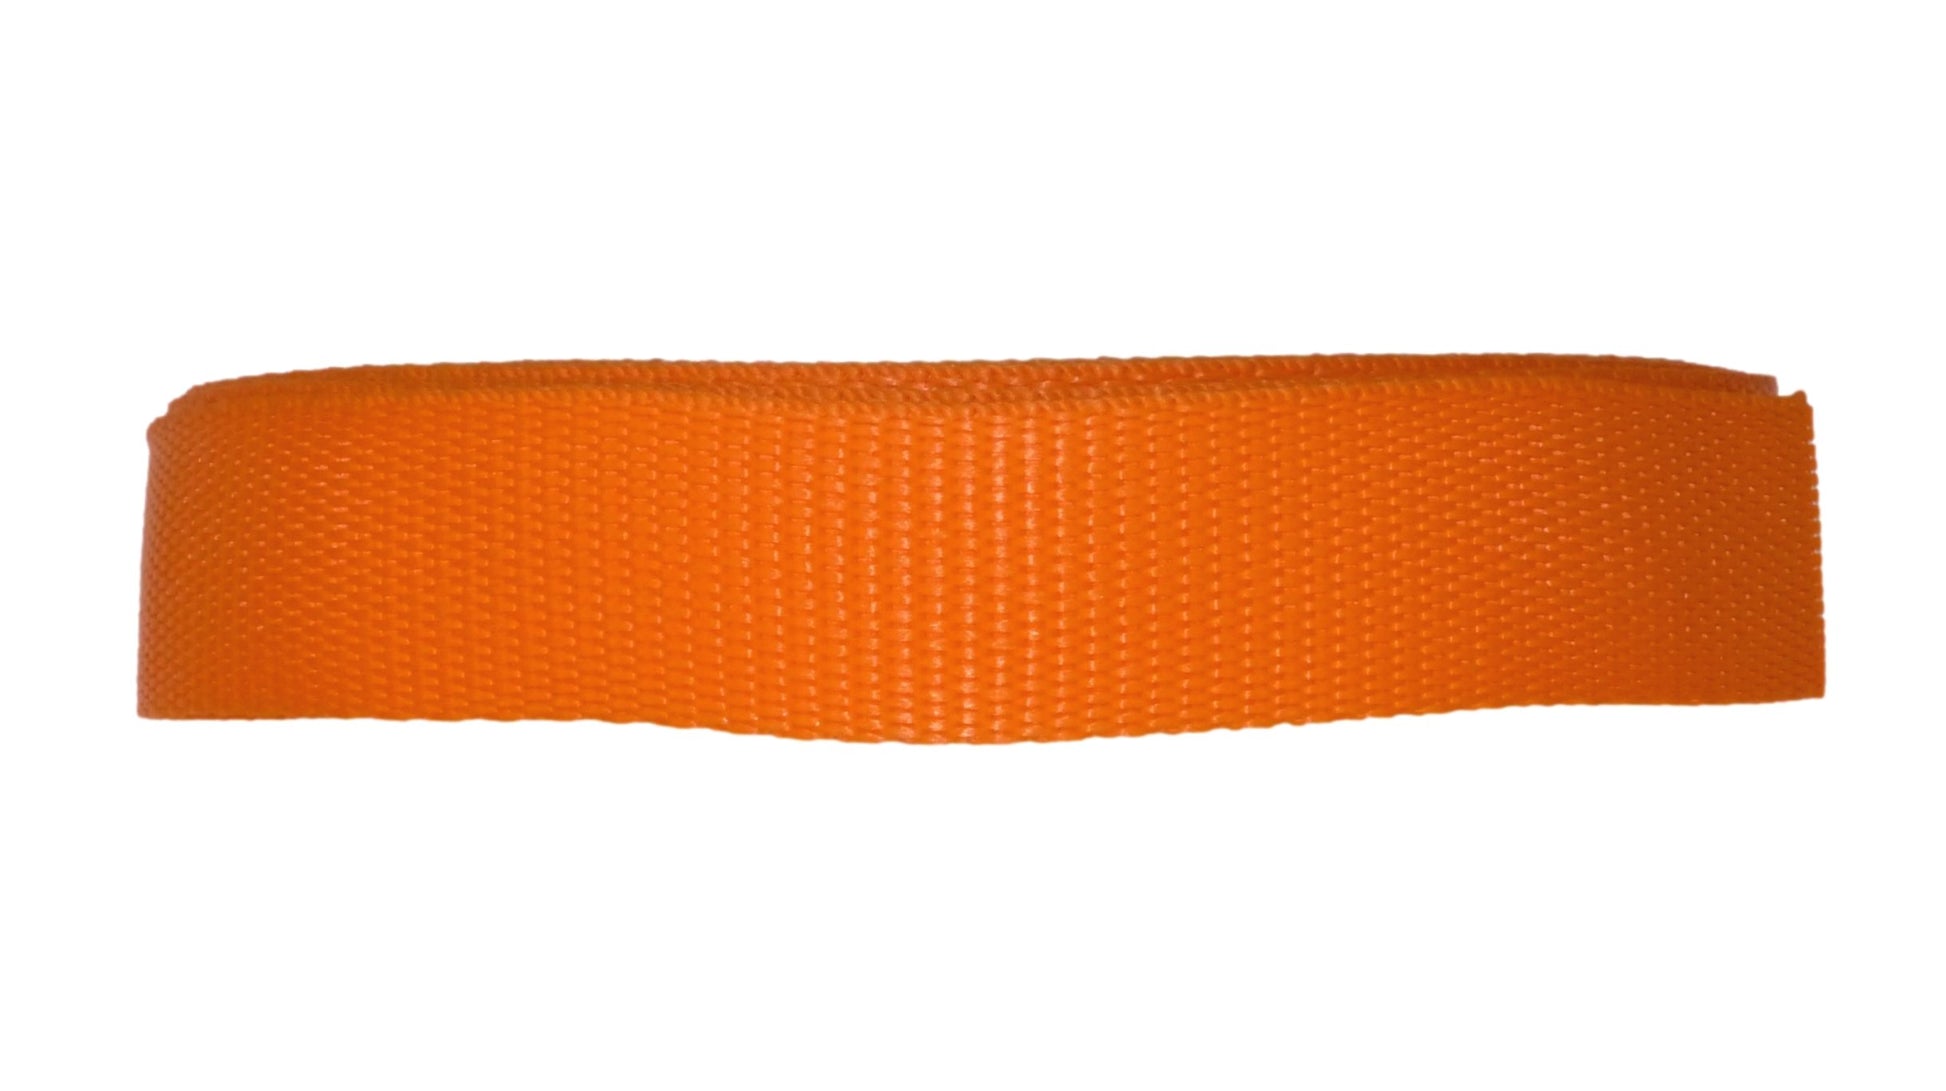 Benristraps 25mm Polypropylene Webbing, 10 metres (32') in orange